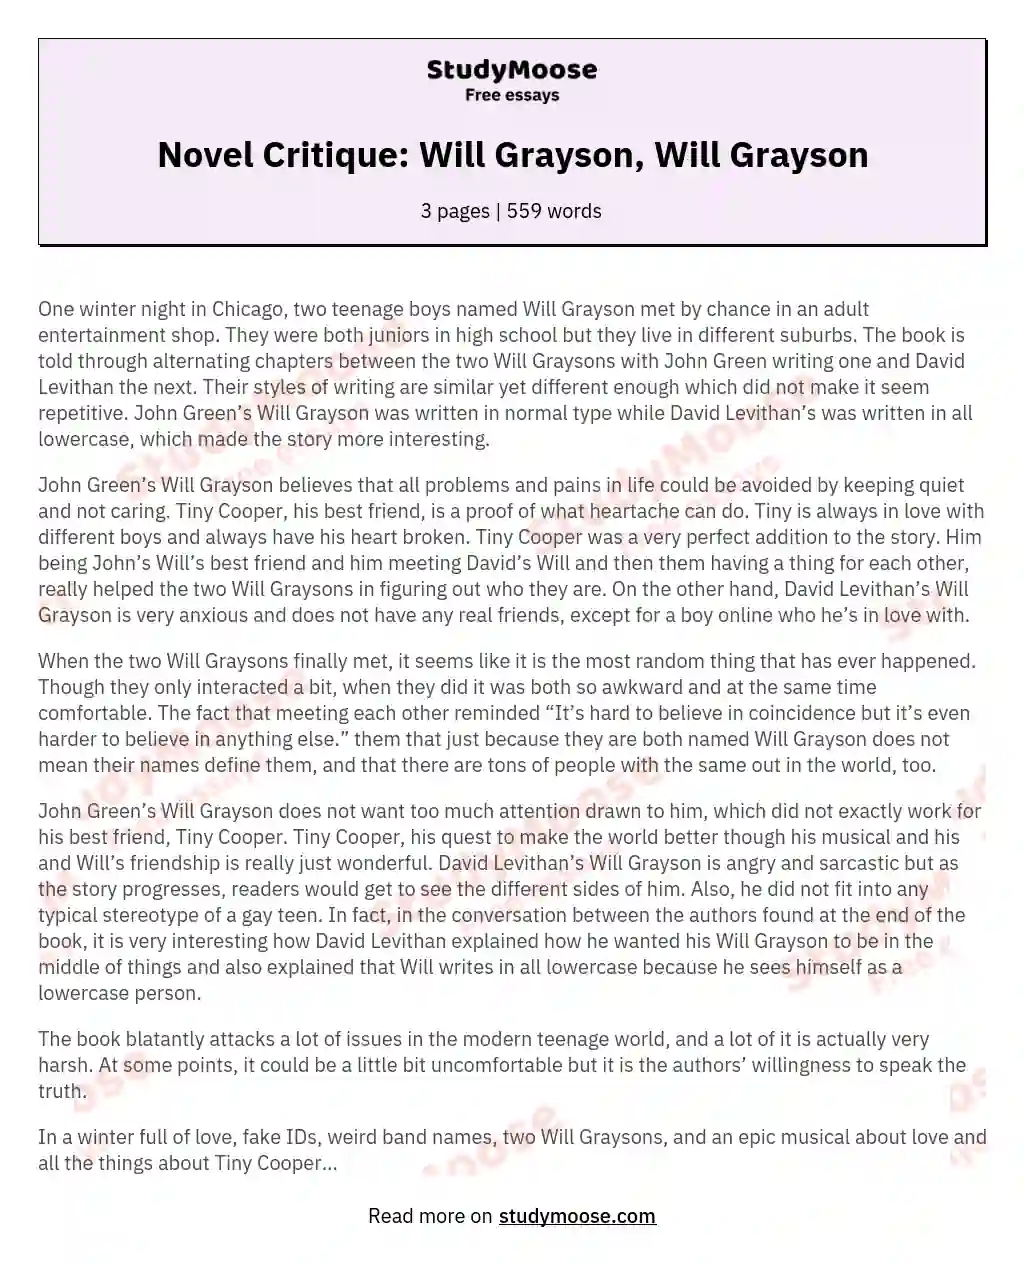 Novel Critique: Will Grayson, Will Grayson essay